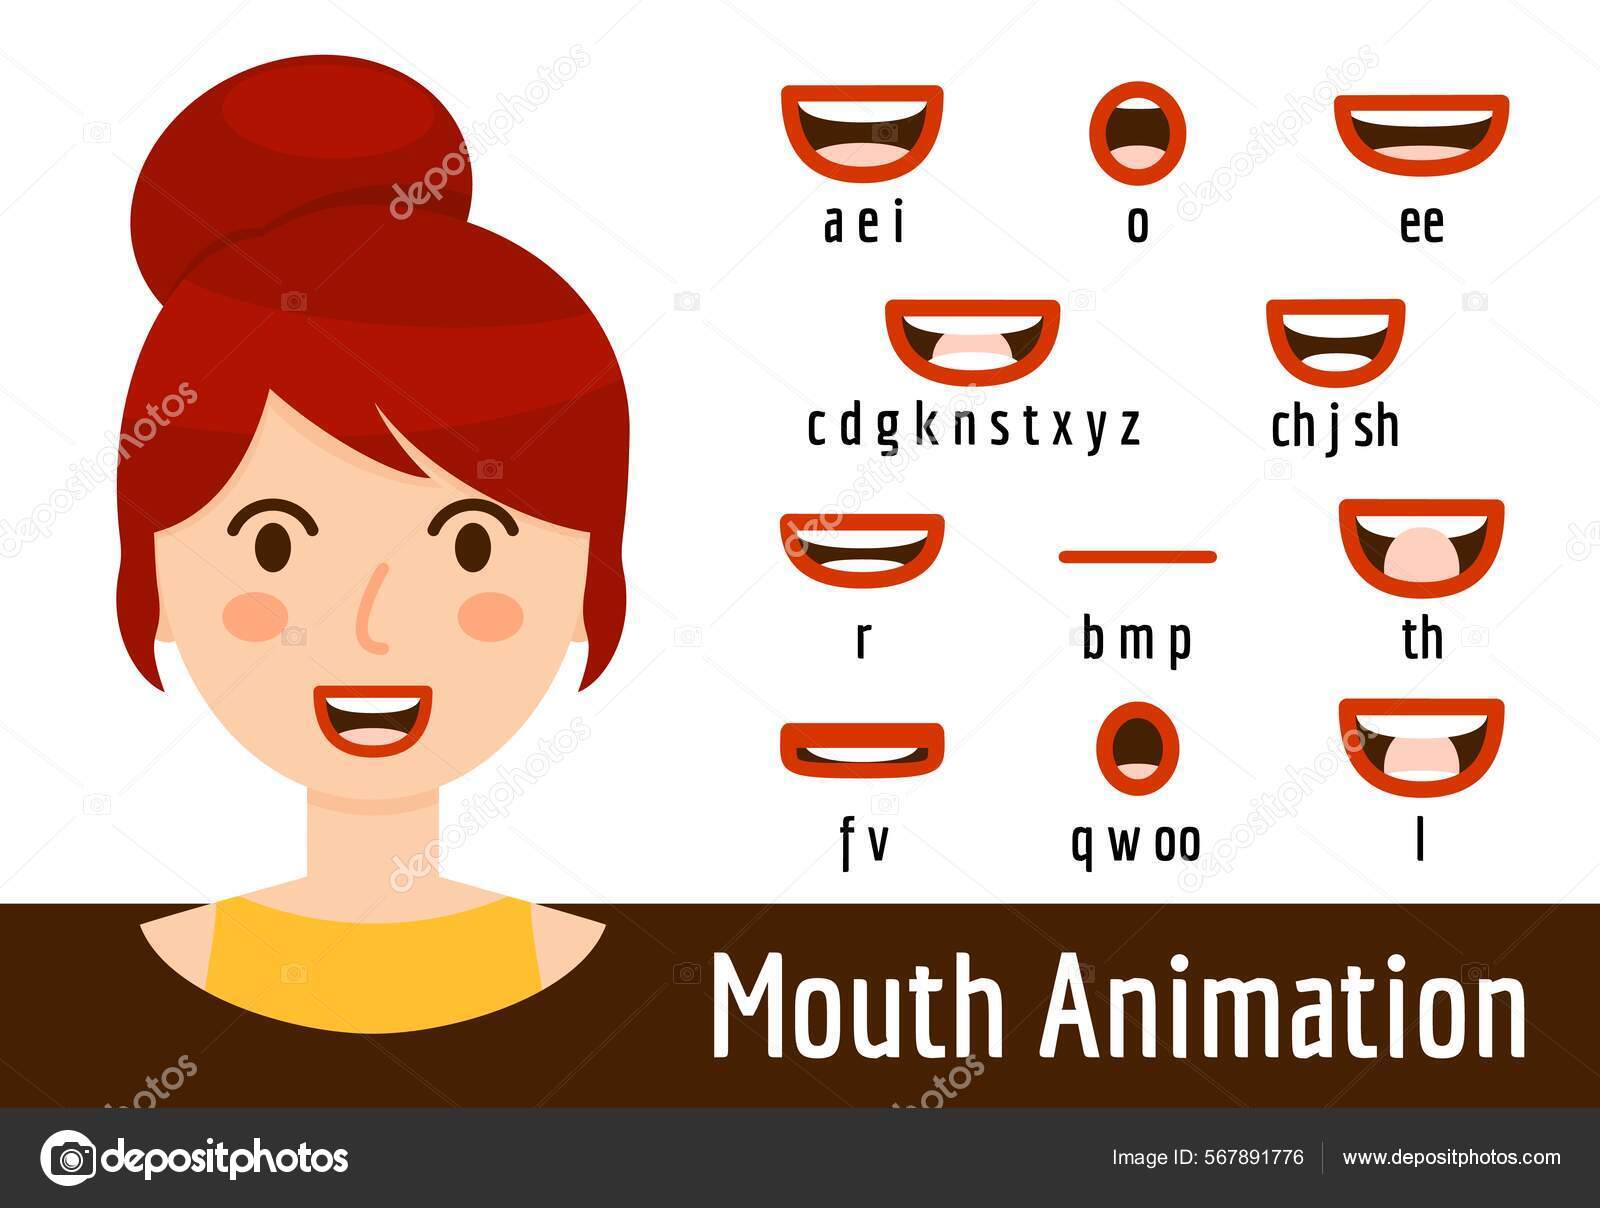 lábios de bocas falantes bonitos dos desenhos animados para